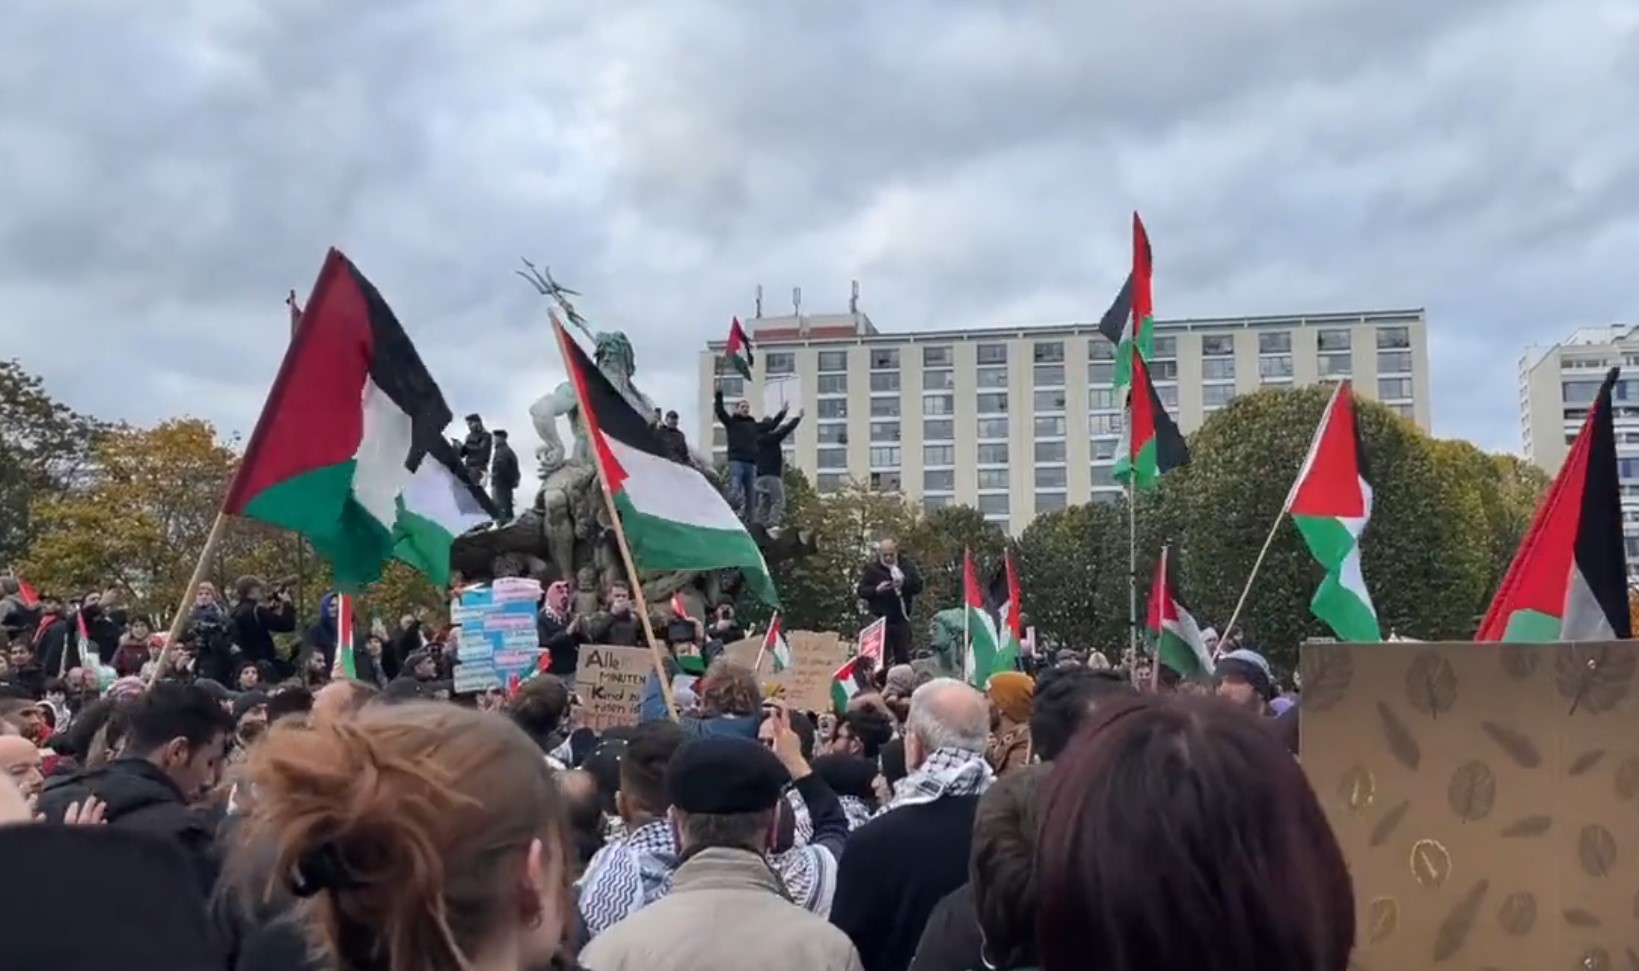 Umstrittene Demonstration in Berlin: Vorwürfe des Judenhasses und Israelfeindlichkeit